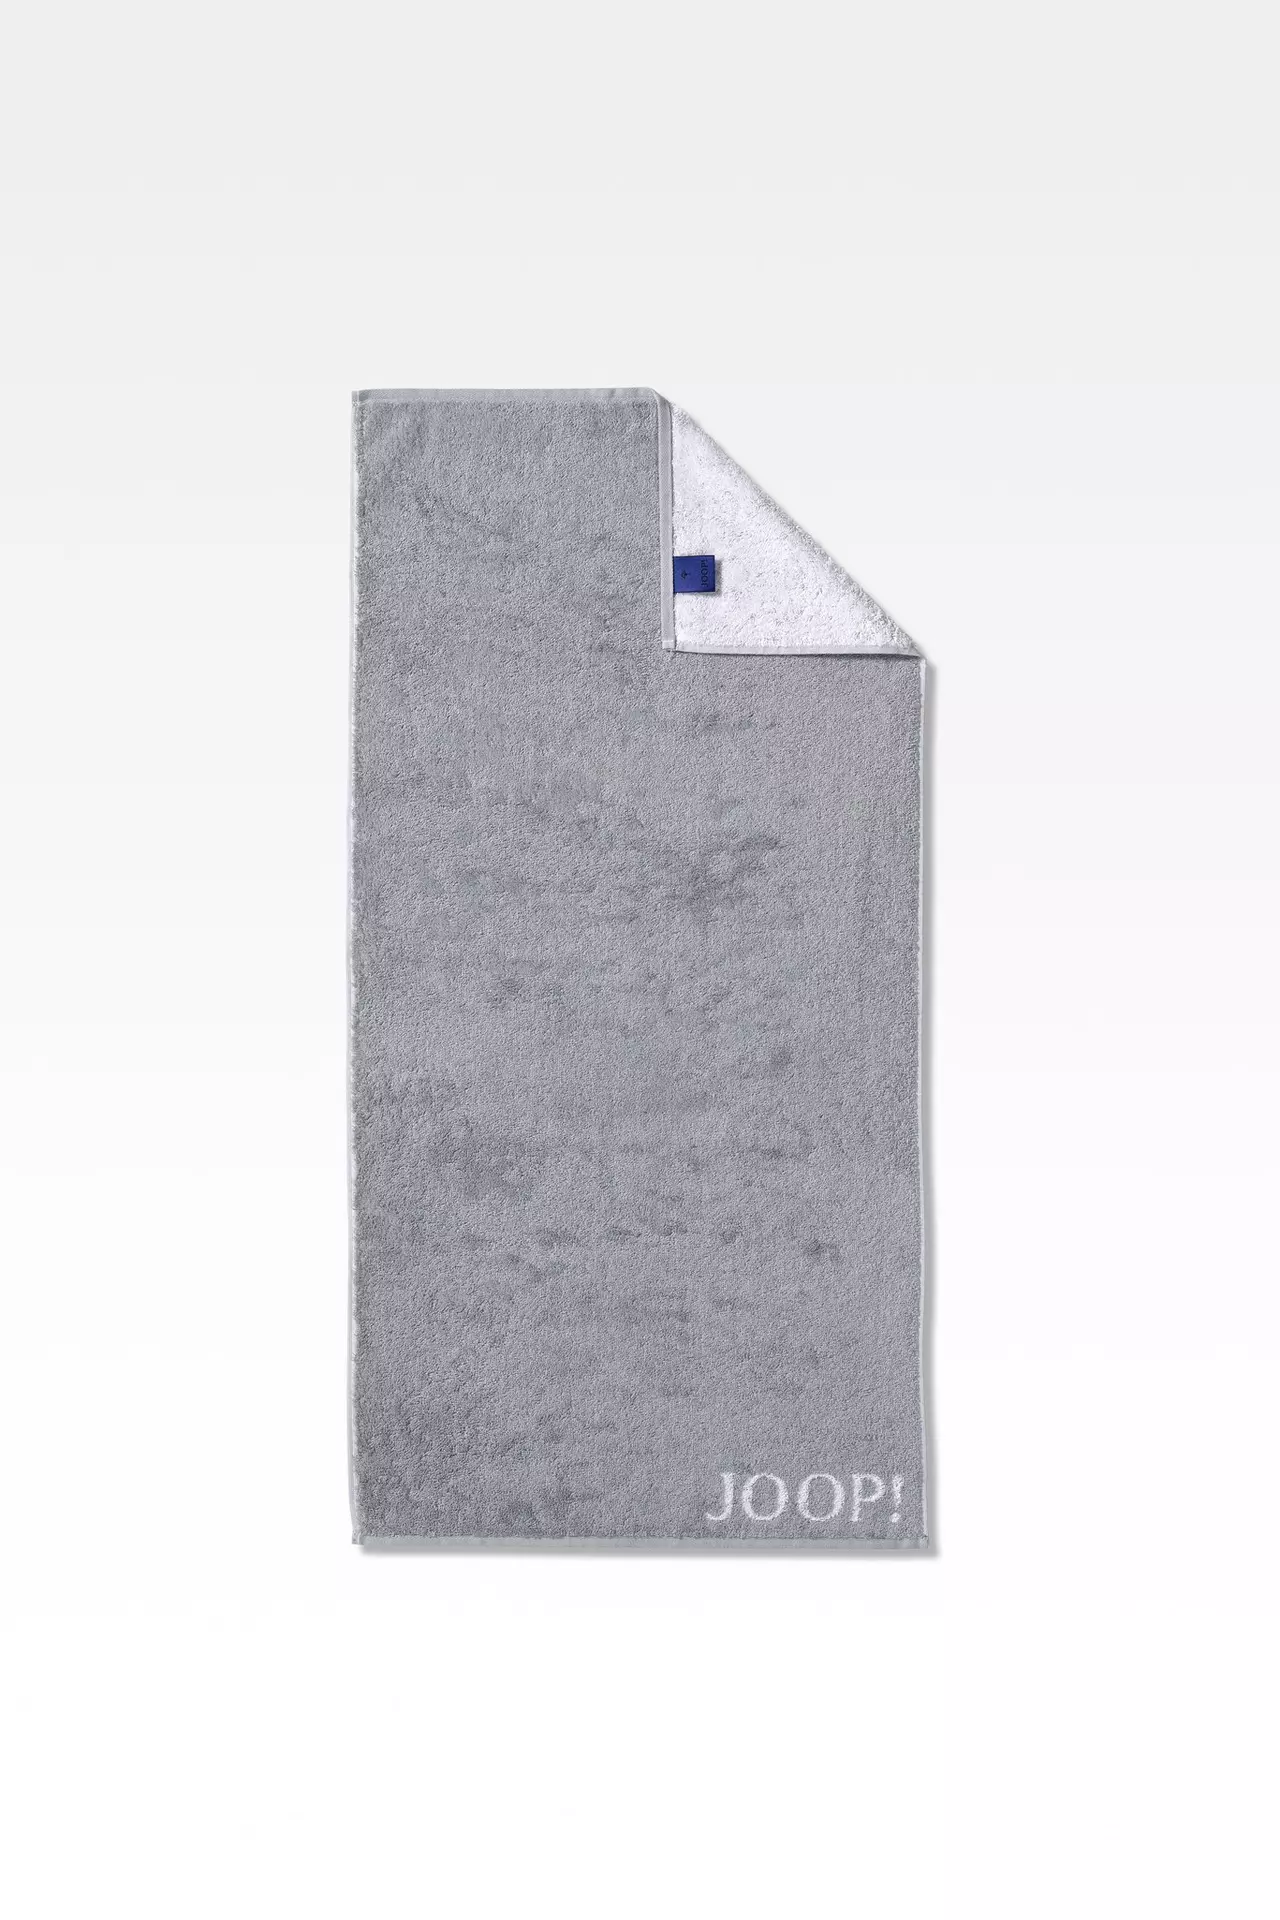 Handtuch Classic Doubleface JOOP Textil 50 x 100 cm